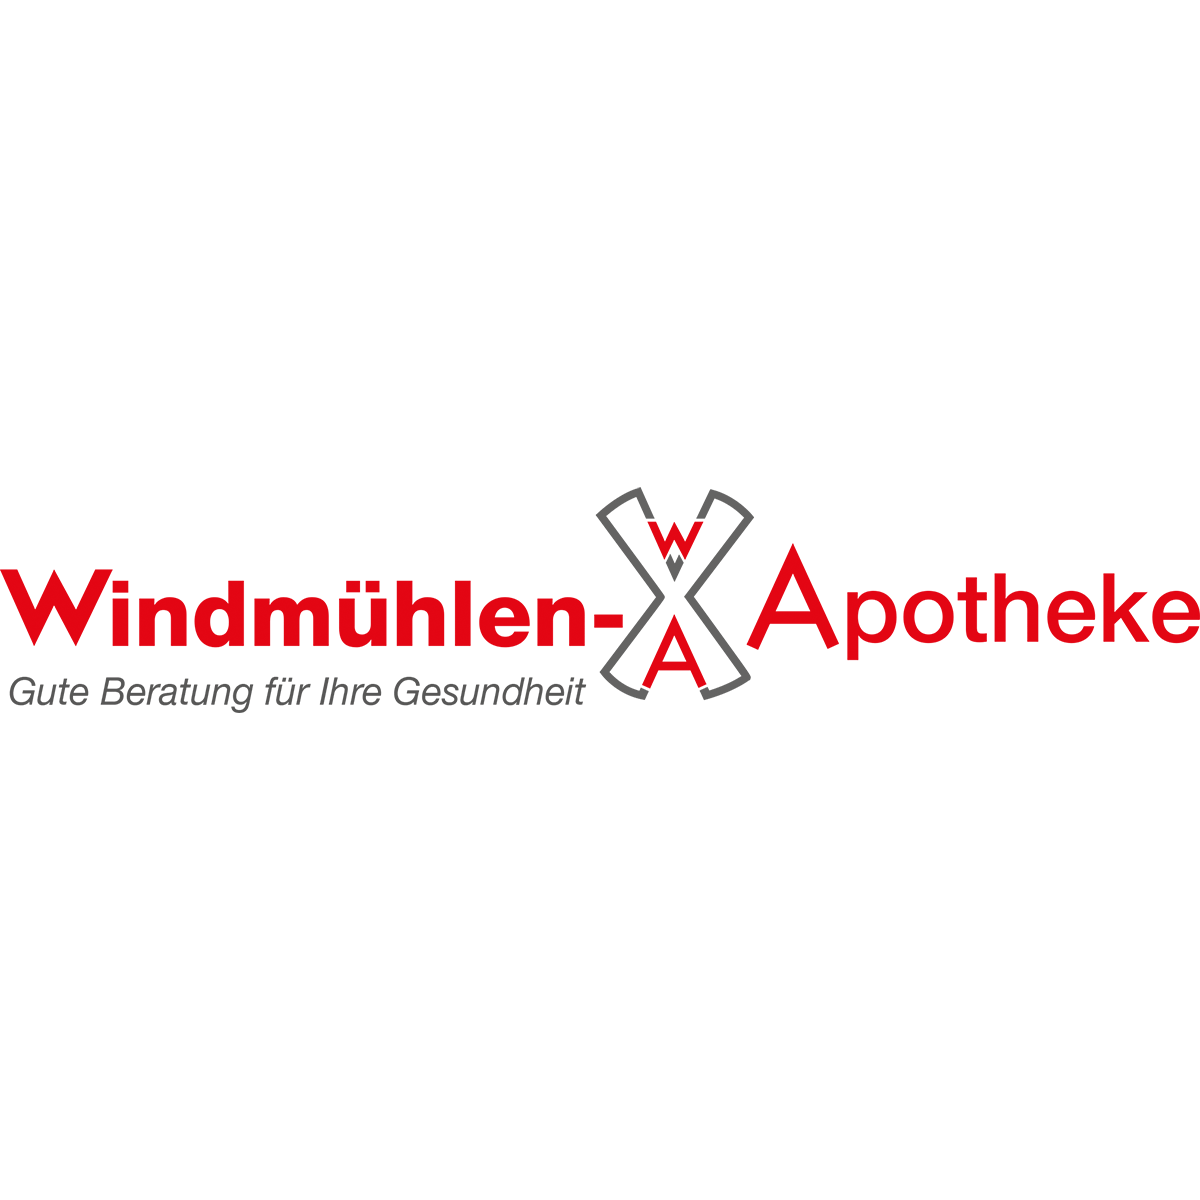 Windmühlen-Apotheke in Köln - Logo